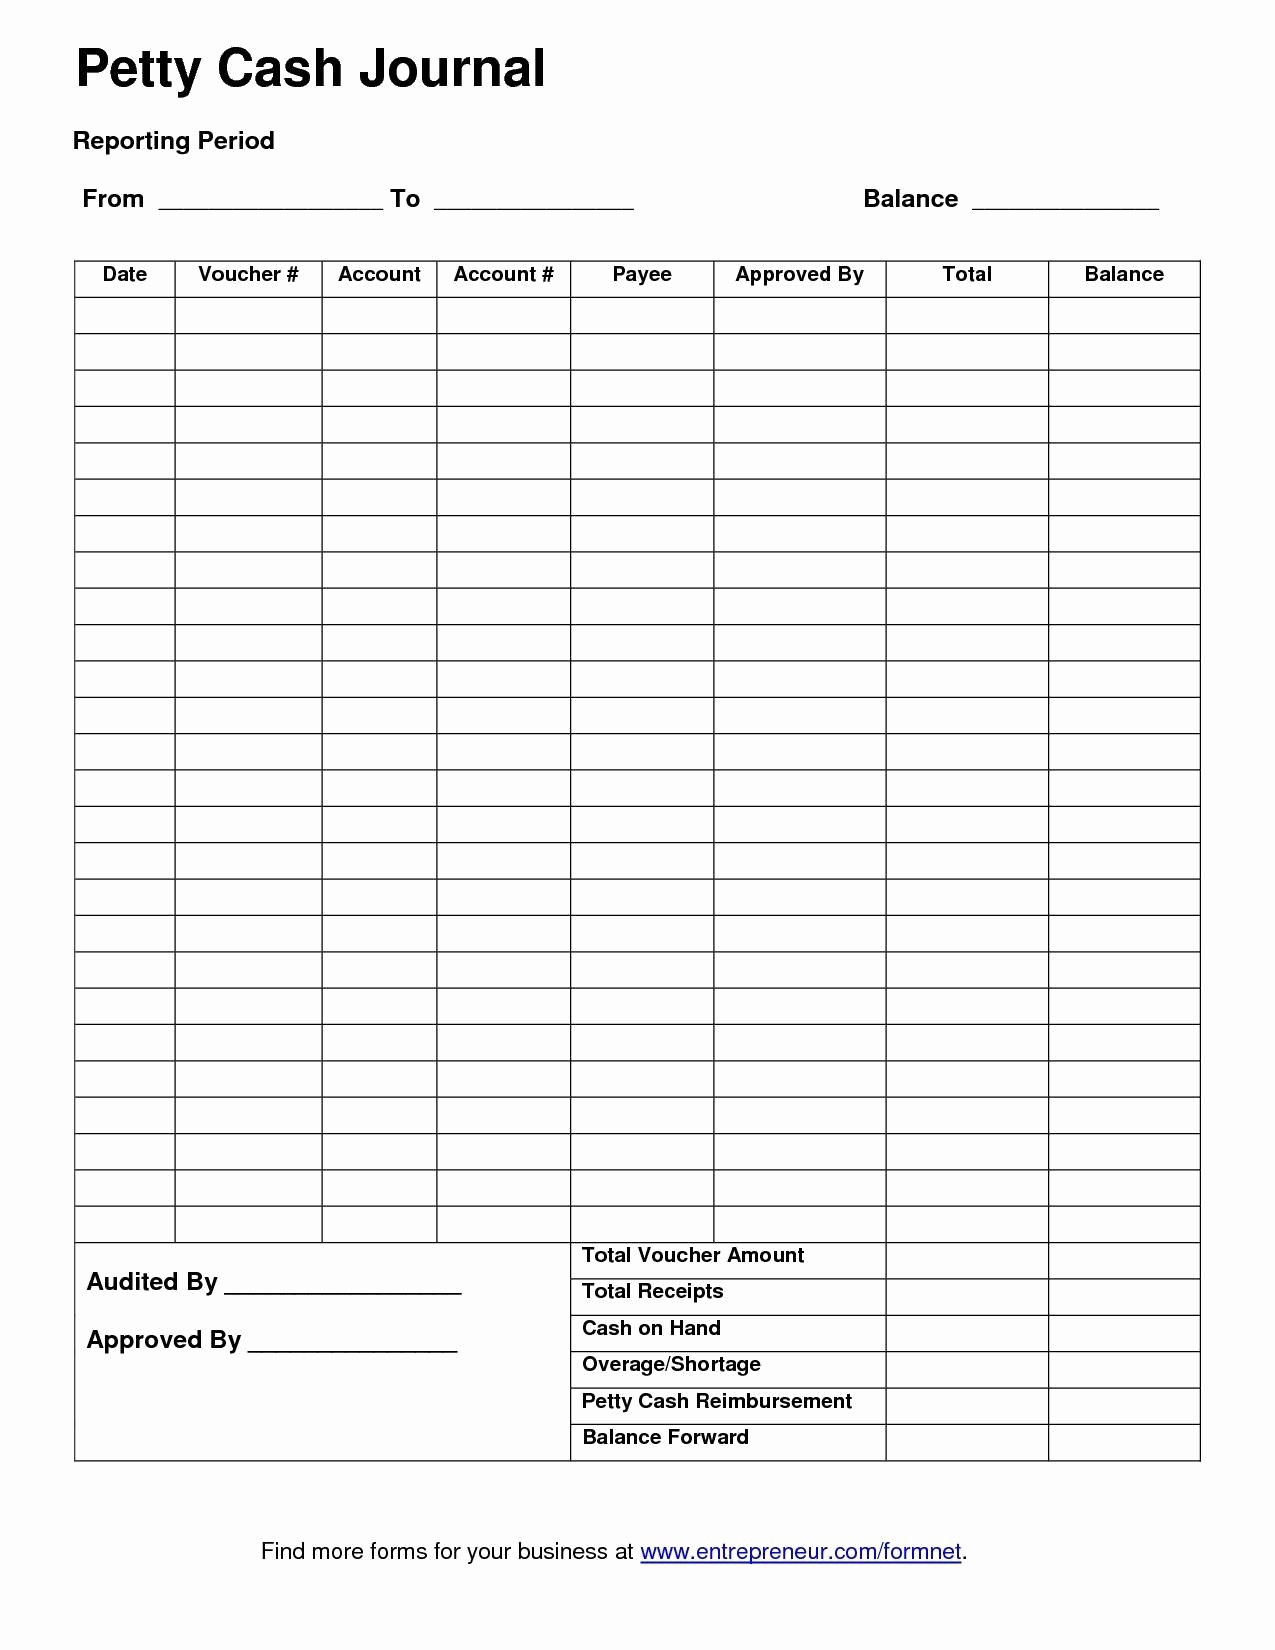 Petty Cash Balance Sheet Template Luxury Template for Petty Cash Petty Cash Report Template Excel